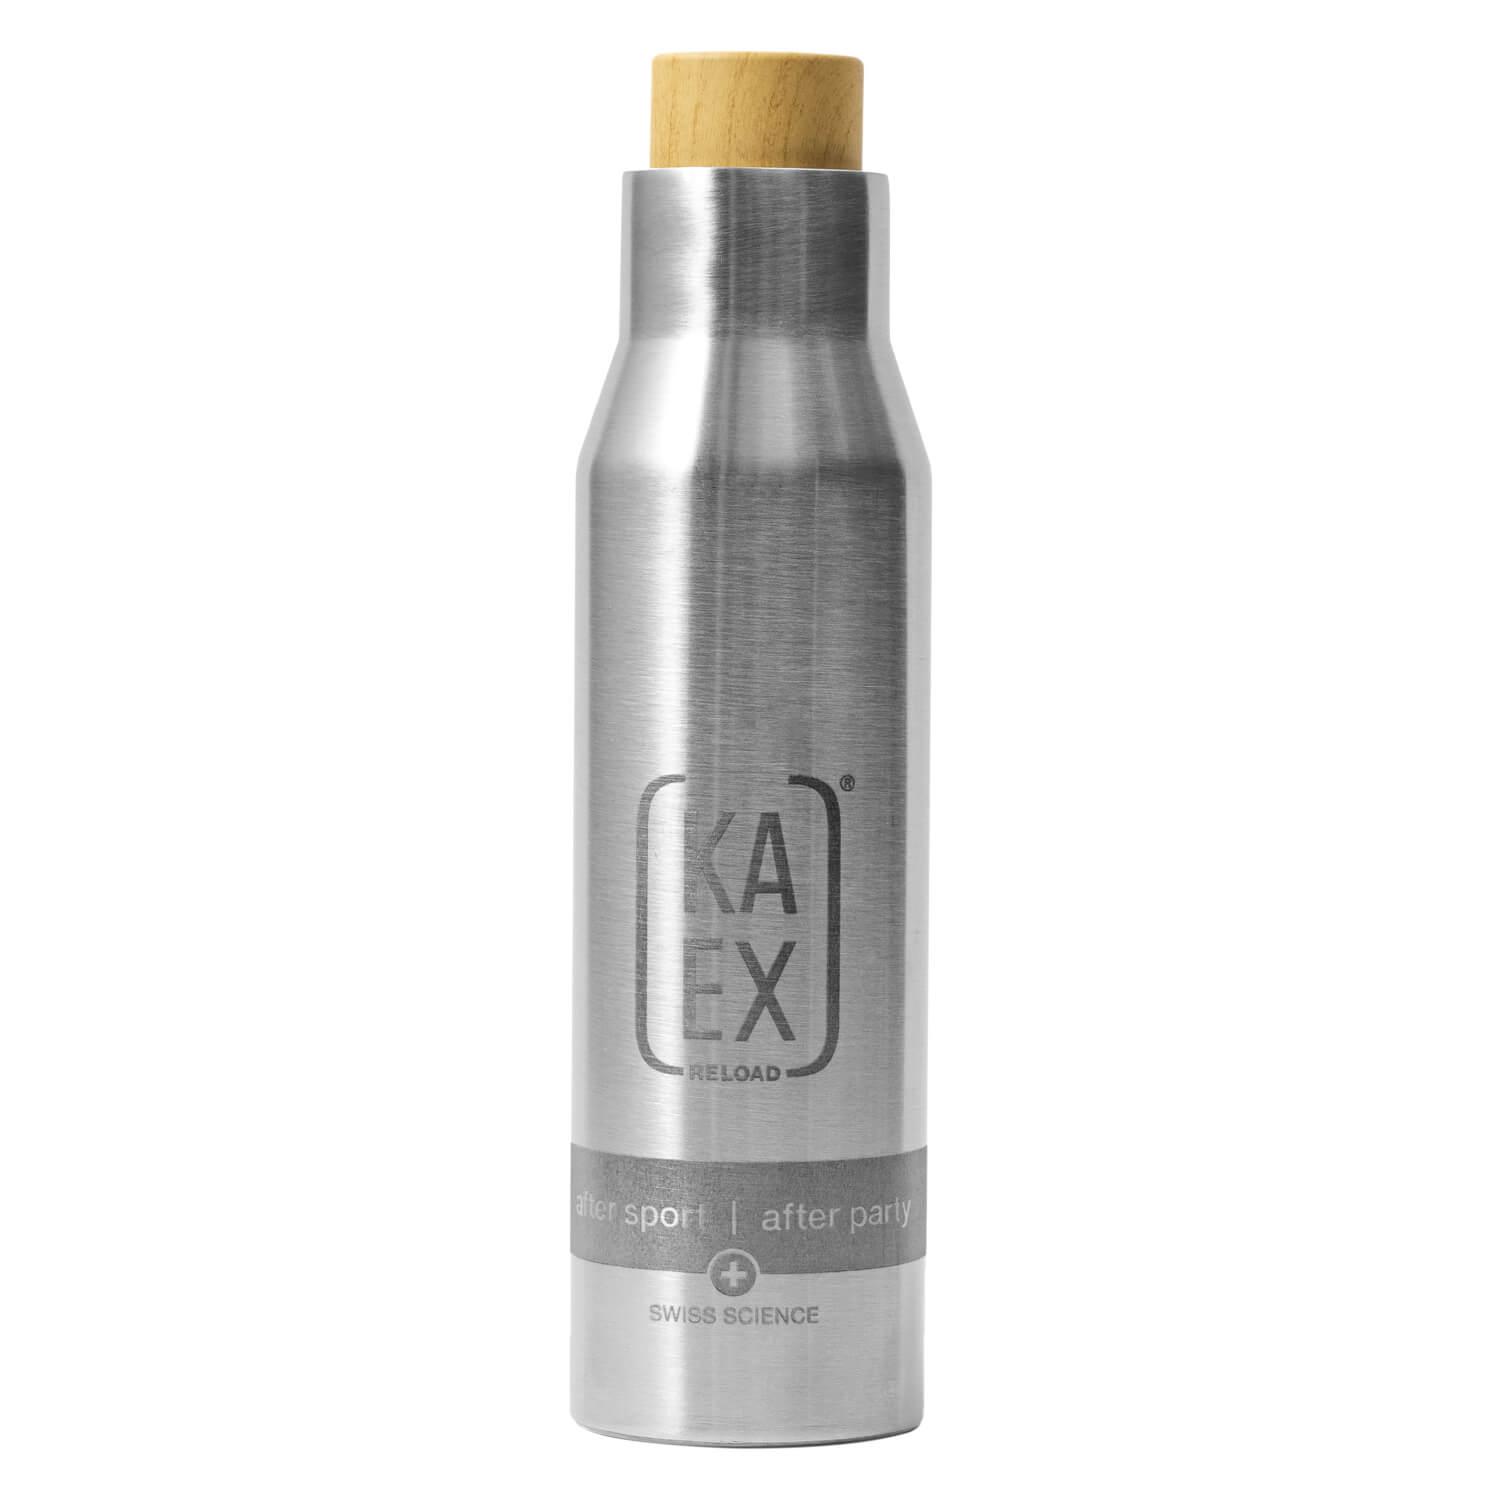 KAEX - Thermal bottle